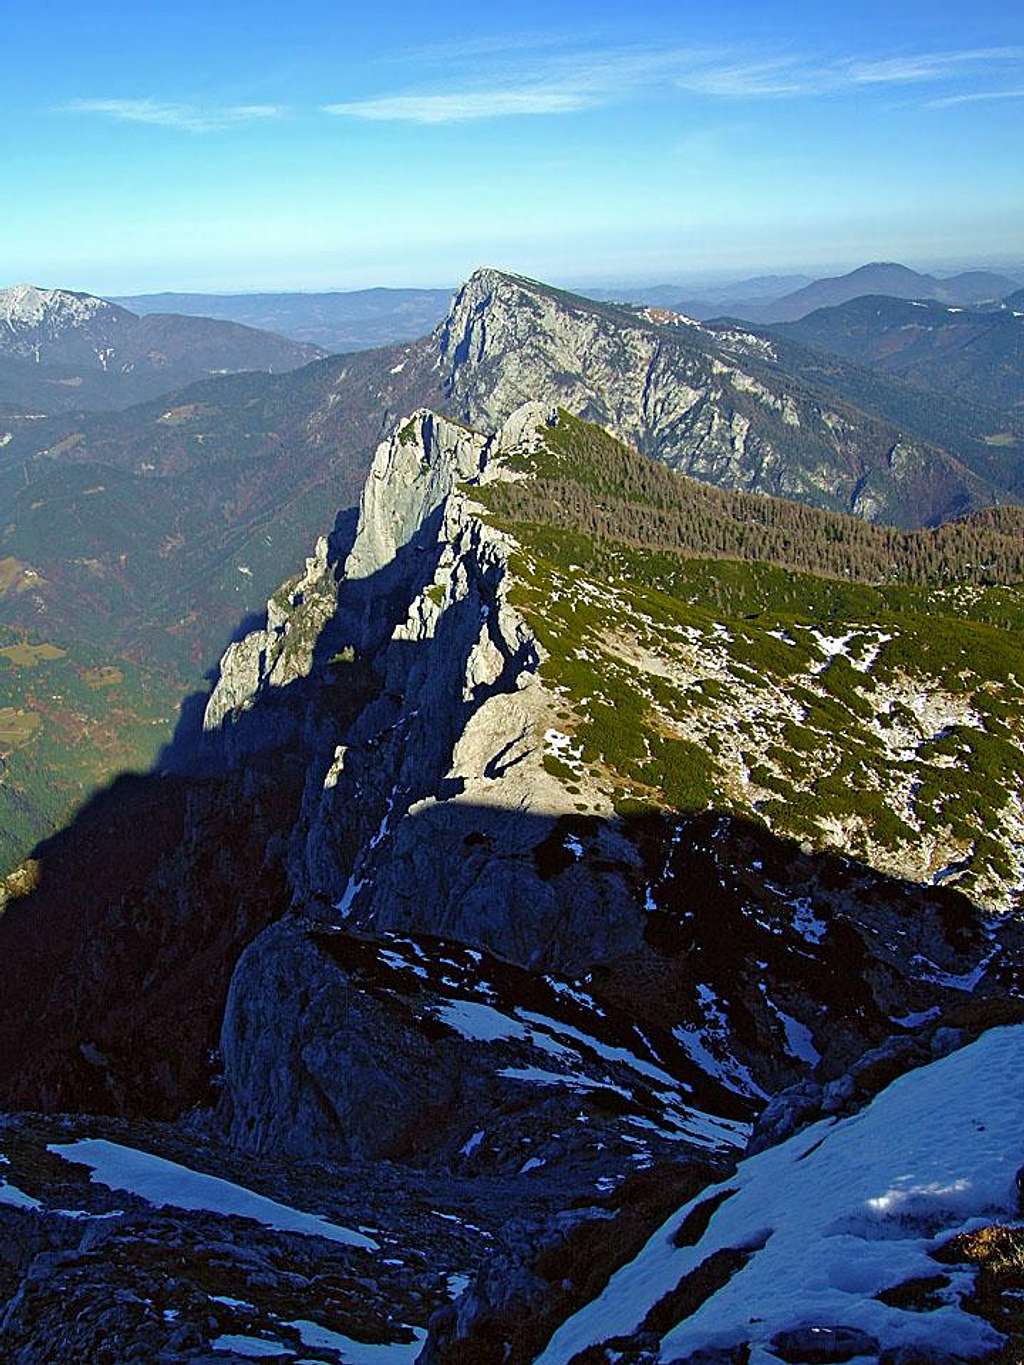 The NE ridge of Veliki vrh